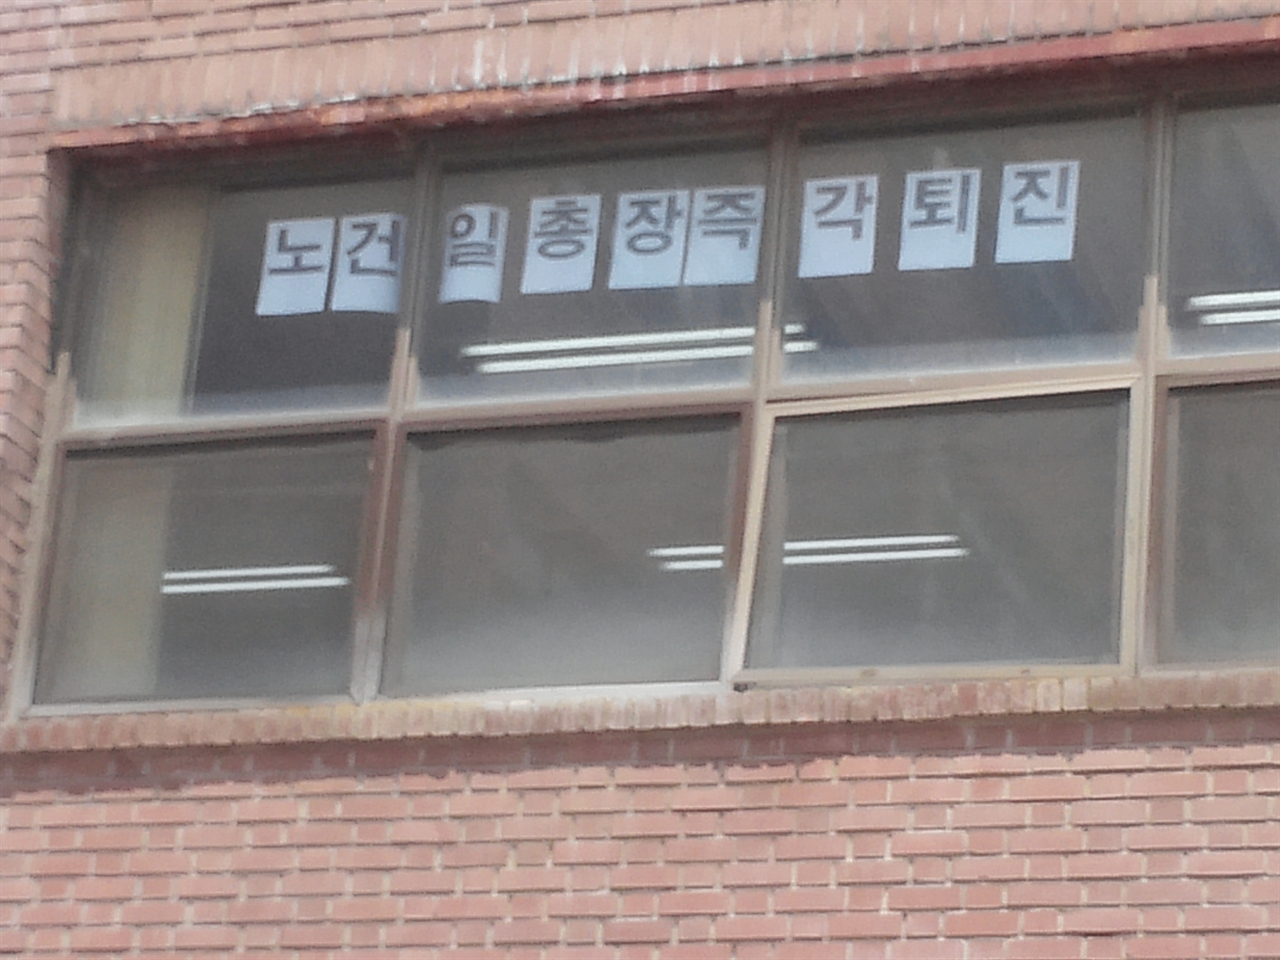 교수평의회 회의실 창문에 '노건일 총장 즉각 퇴진'이라는 글이 붙어 있다.